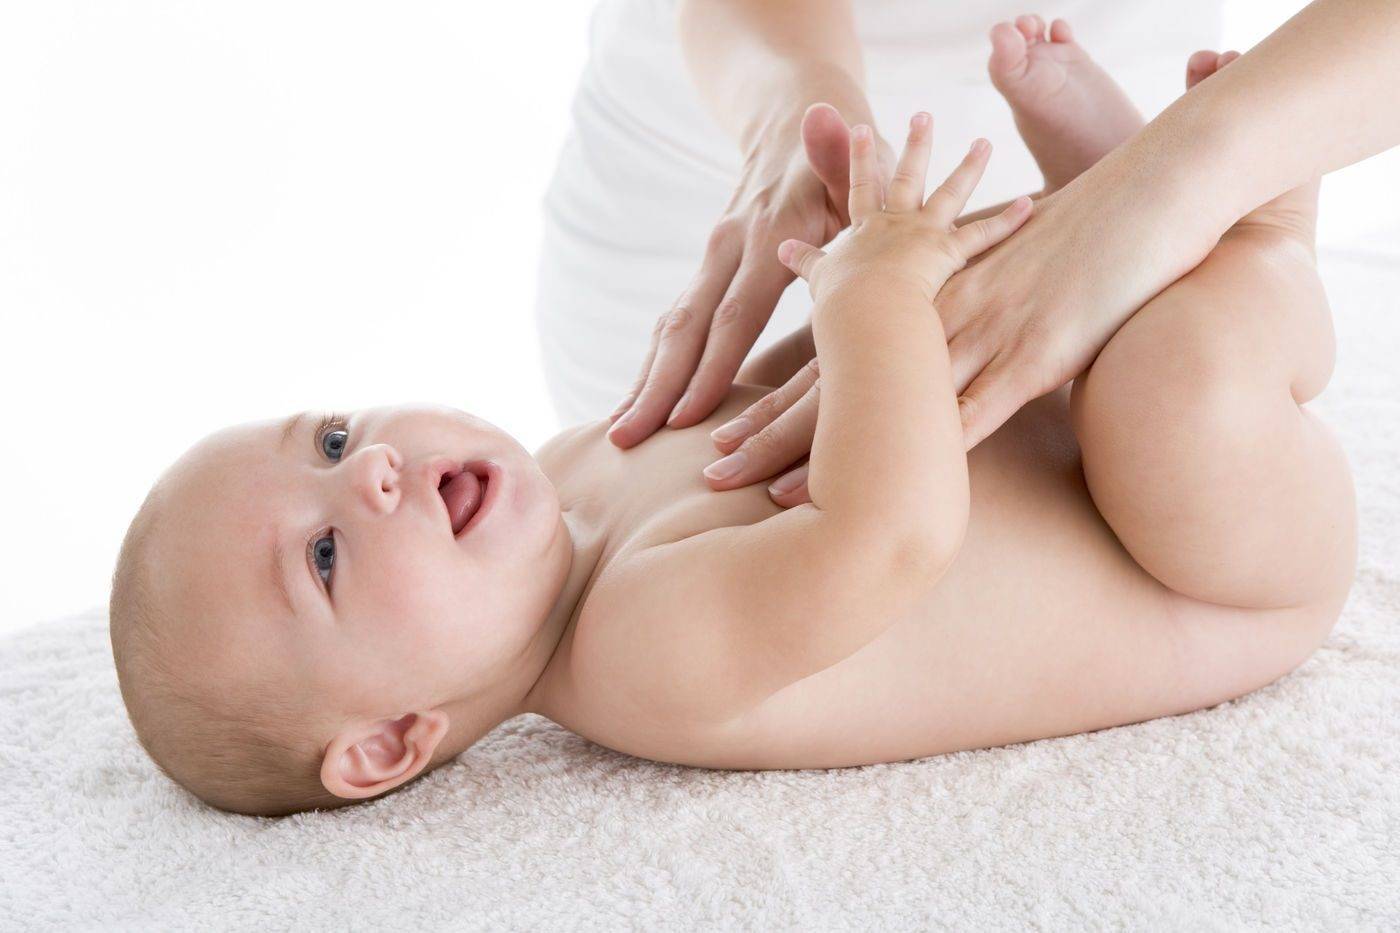 Что делать, если младенцу поставили диагноз «гипертонус мышц»?